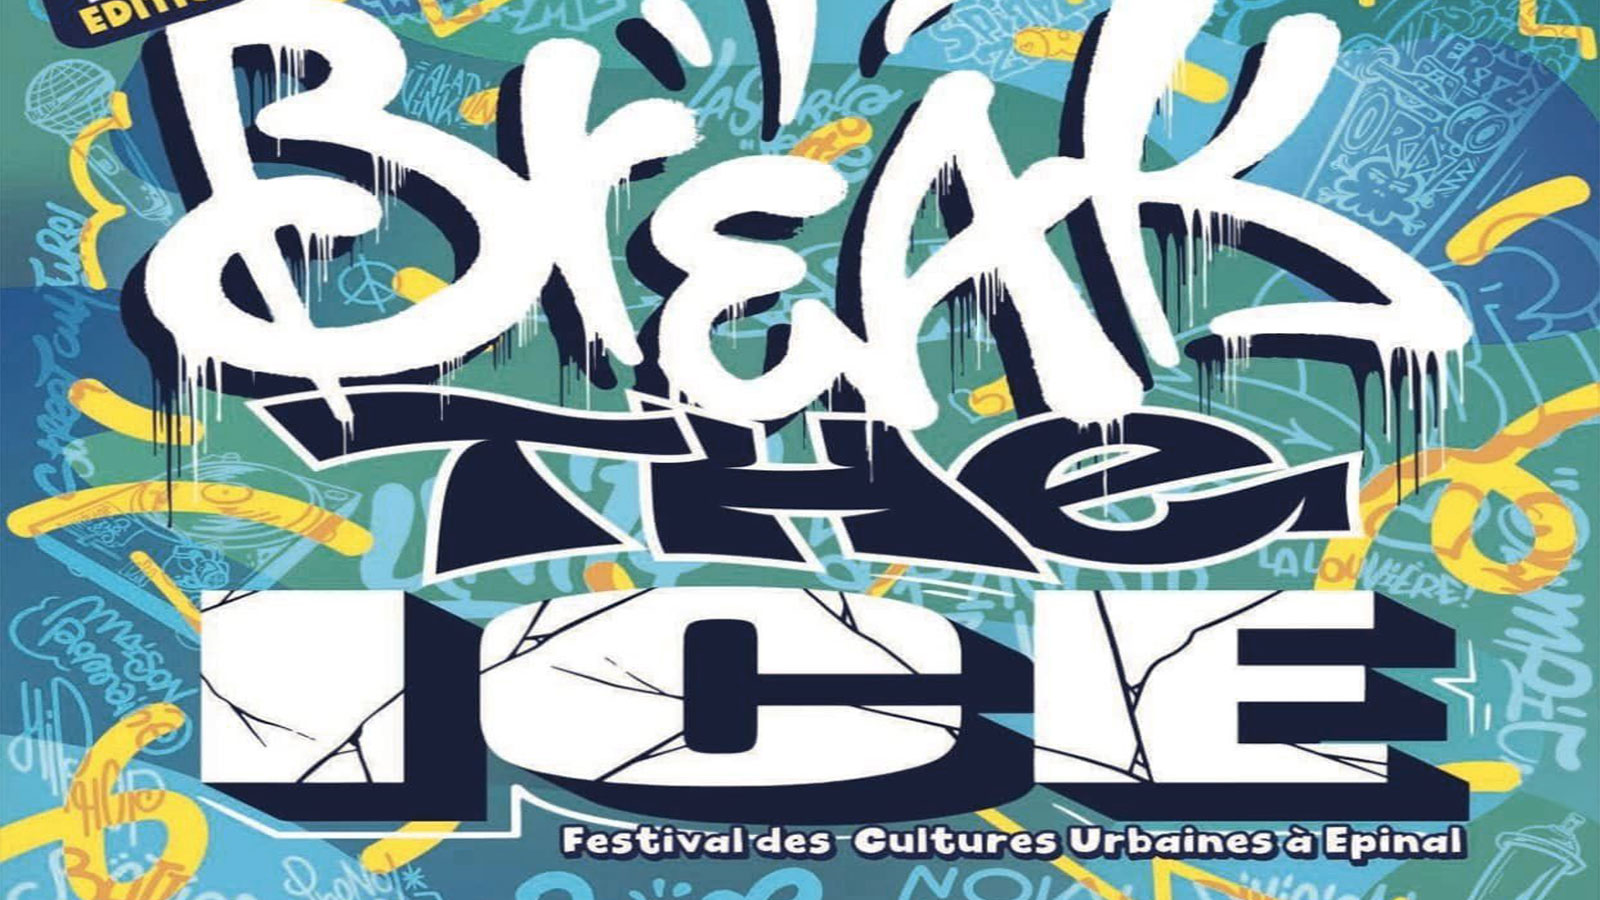  Les cultures urbaines à l'honneur avec le festival Break The Ice